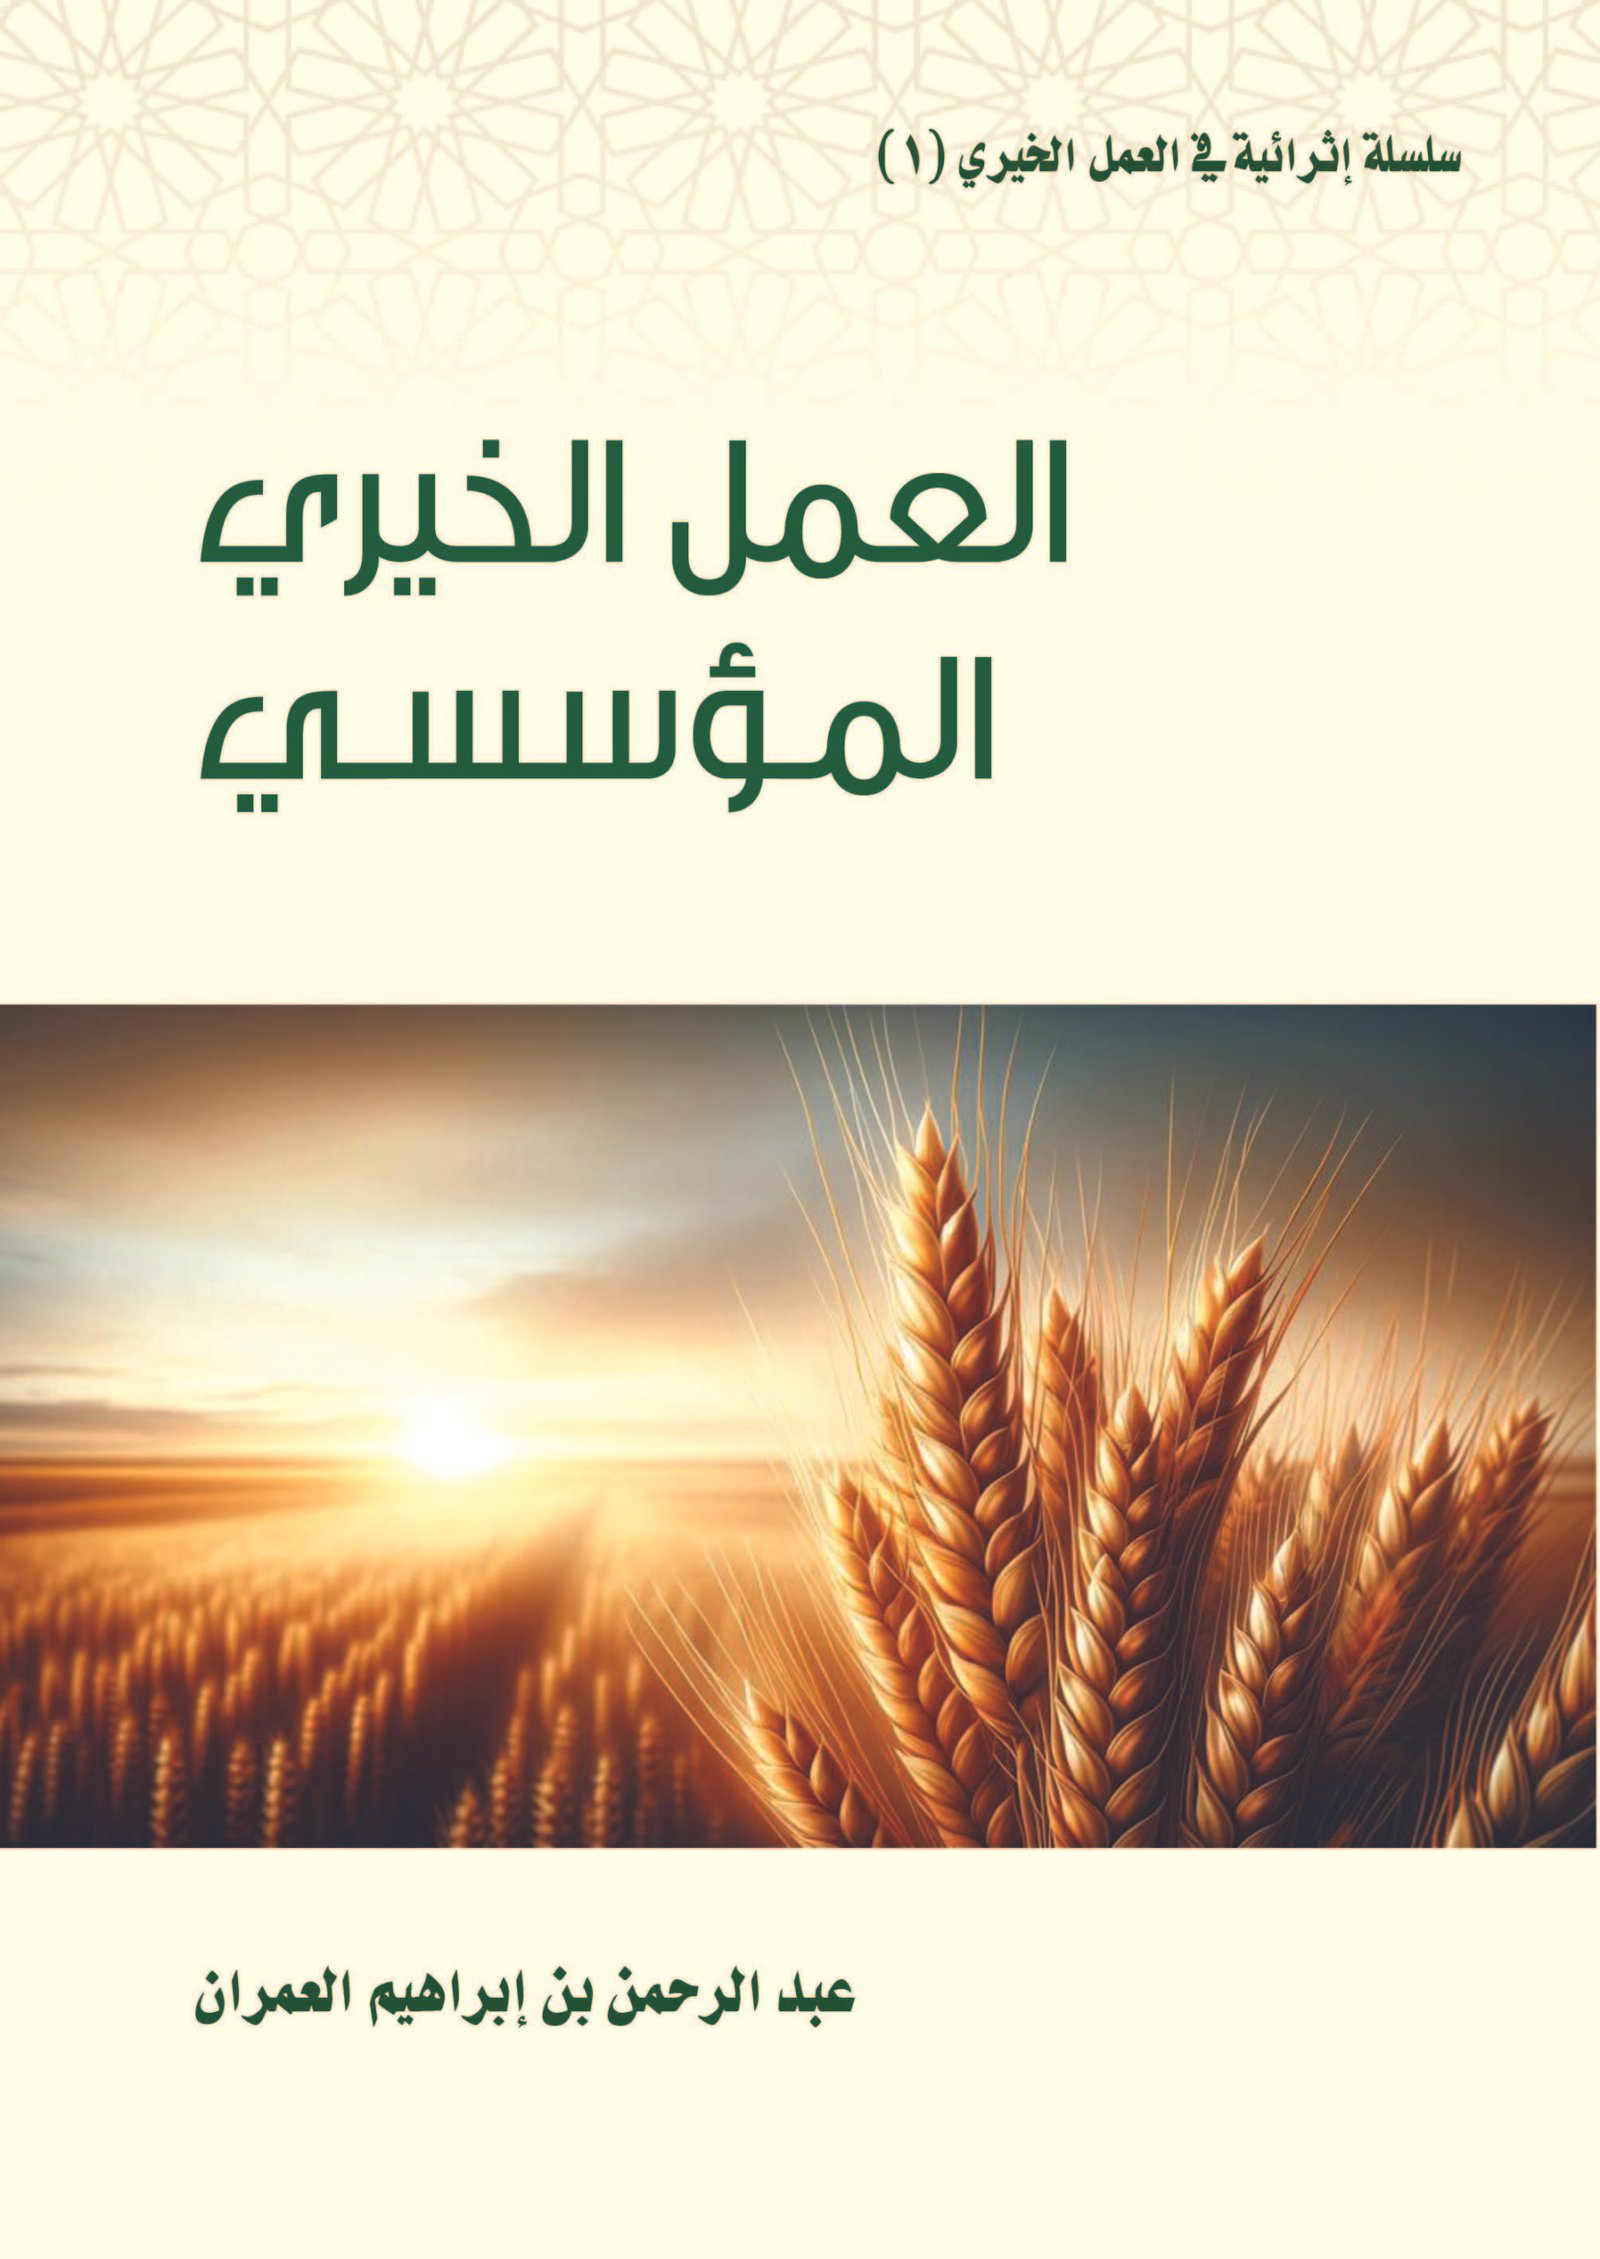 كتاب بعنوان: (العمل الخيري المؤسسي) لأبن العم عبدالرحمن بن إبراهيم العمران